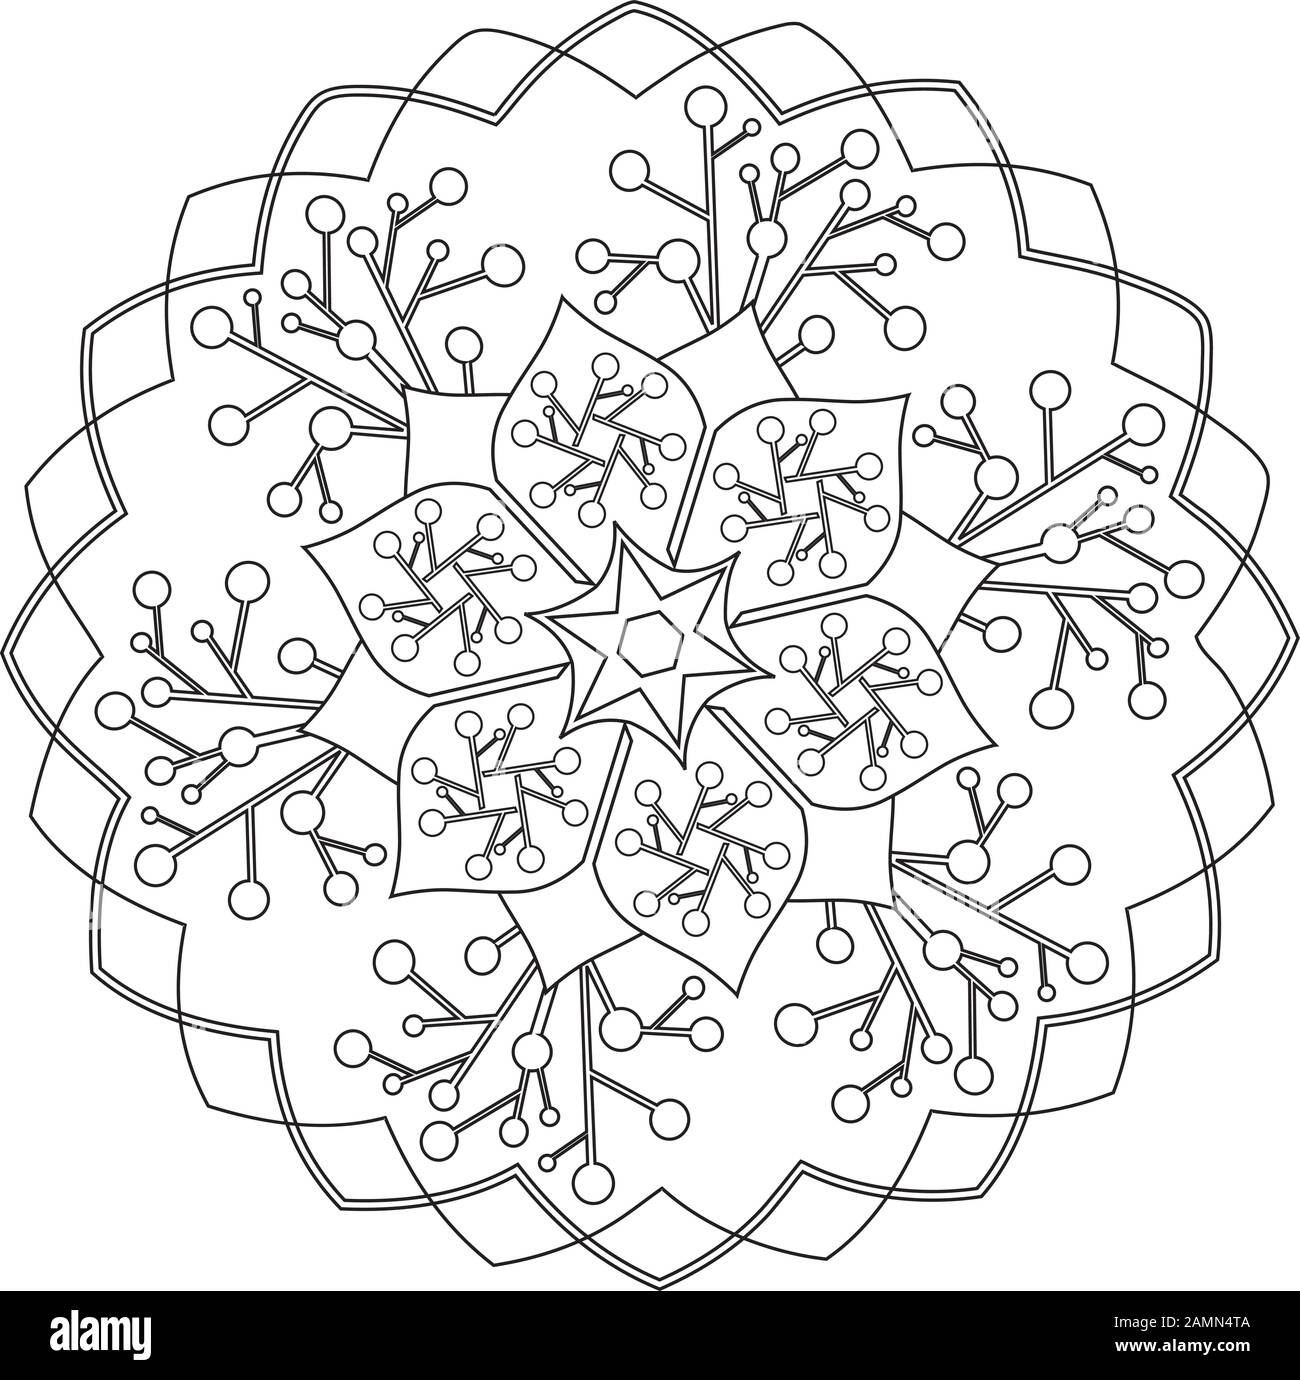 Mandala - Flor, Naturaleza, Círculo De Energía Símbolo En Blanco Y Negro Ilustración del Vector